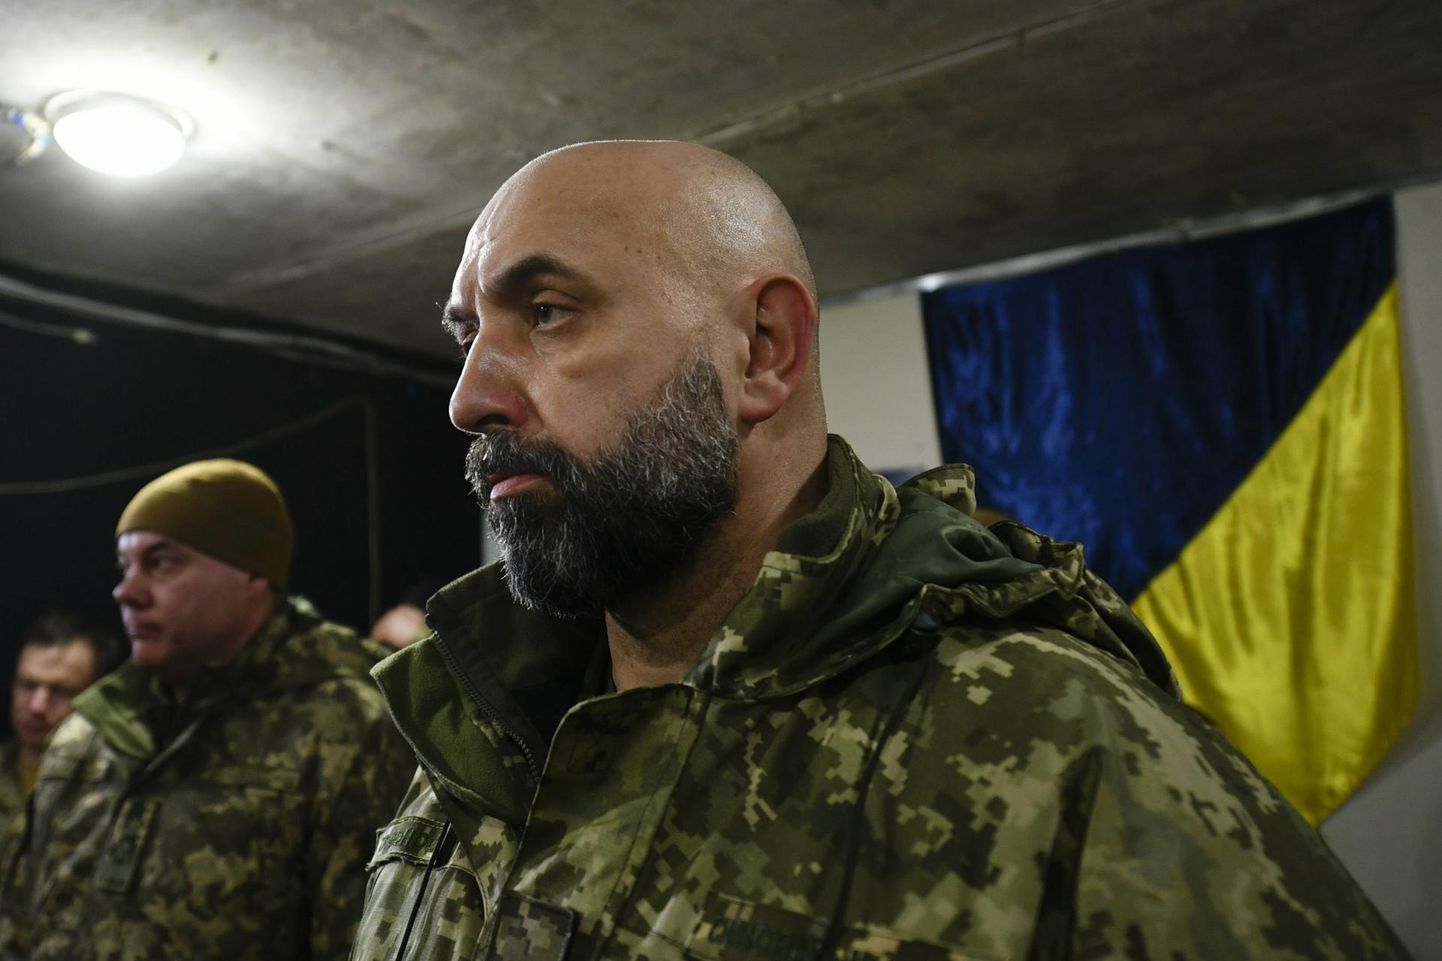 Вклад генерала-ветерана Сергея Кривоноса в оборону аэродрома Жуляны очень значителен.